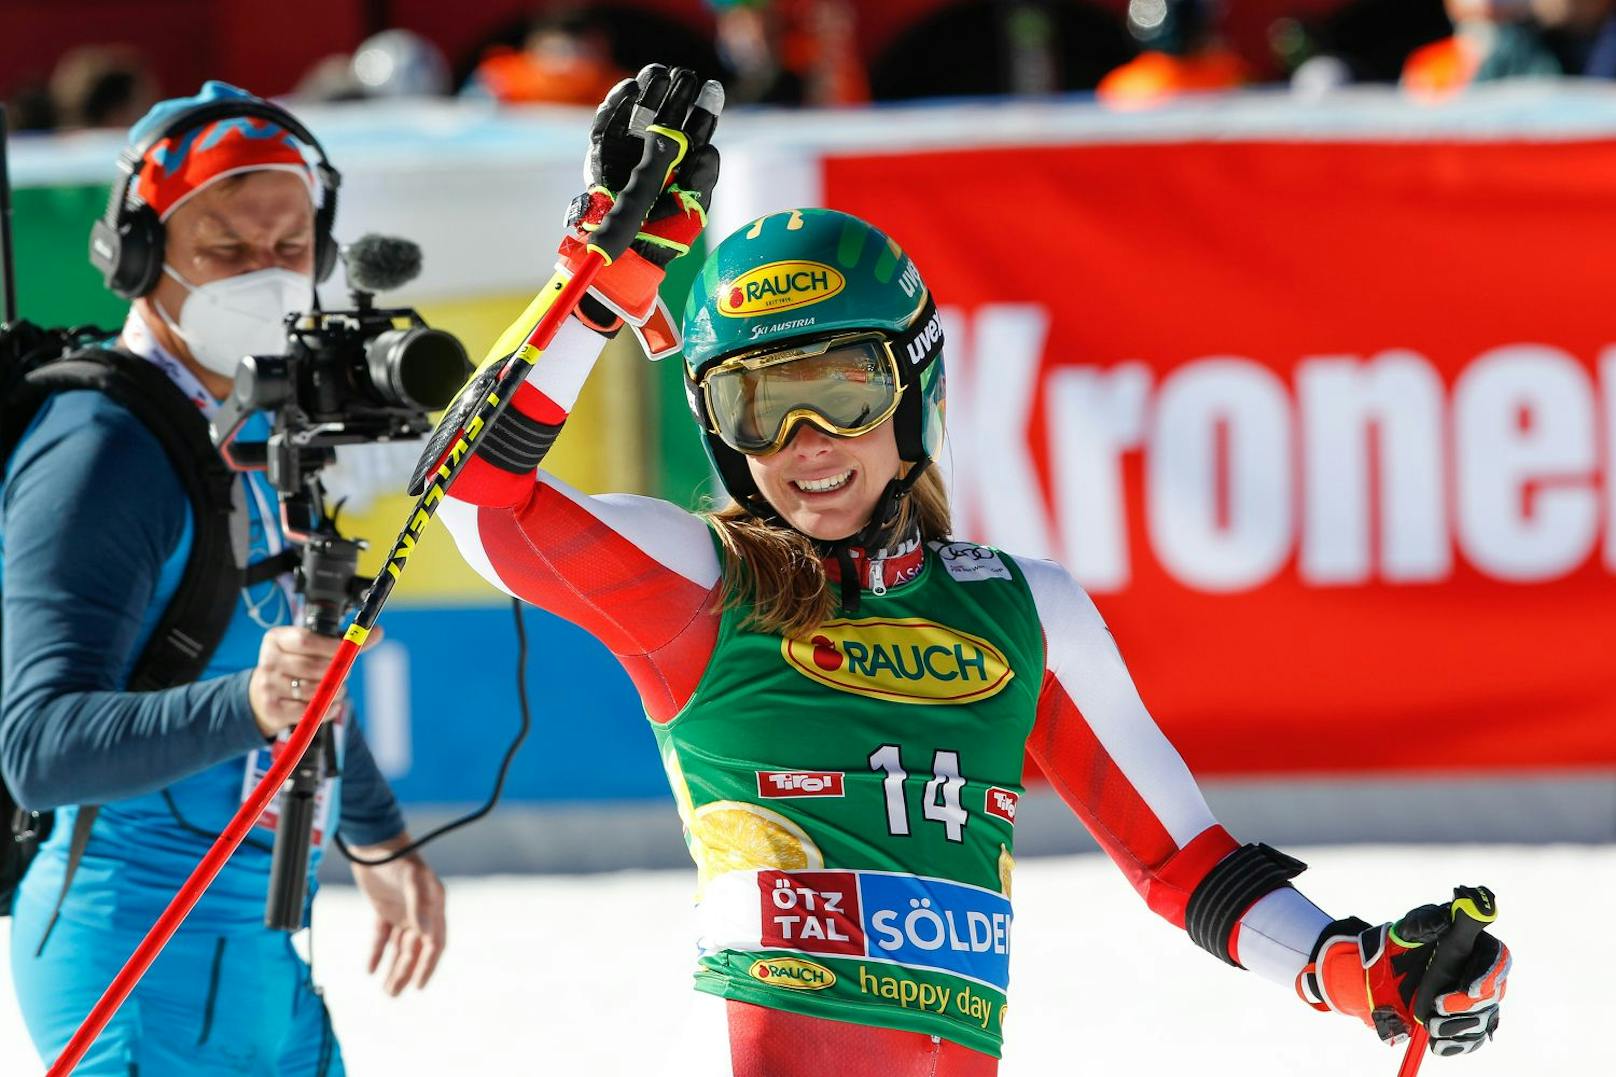 Doppel-Weltmeister Katharina Liensberger legte in Sölden einen starken Saisonauftakt hin, landete im Gletscher-Riesentorlauf auf dem vierten Rang (+1,39). Gerde einmal neun Hundertstel fehlten zum Stockerl. Ski-Queen Mikaela Shiffrin eröffnete die Saison derweil mit einem Sieg, ließ Lara Gut-Behrami um 14 Hundertstel hinter sich, die Slowakin Petra Vlhova wurde Dritte (+1,30). Ramona Siebenhofer als Zehnte (+2,38), Ricarda Haaser mit Rang 15 (+2,49) und Stephanie Brunner als 17. (+2,71) komplettierten ein solides ÖSV-Ergebnis.&nbsp;